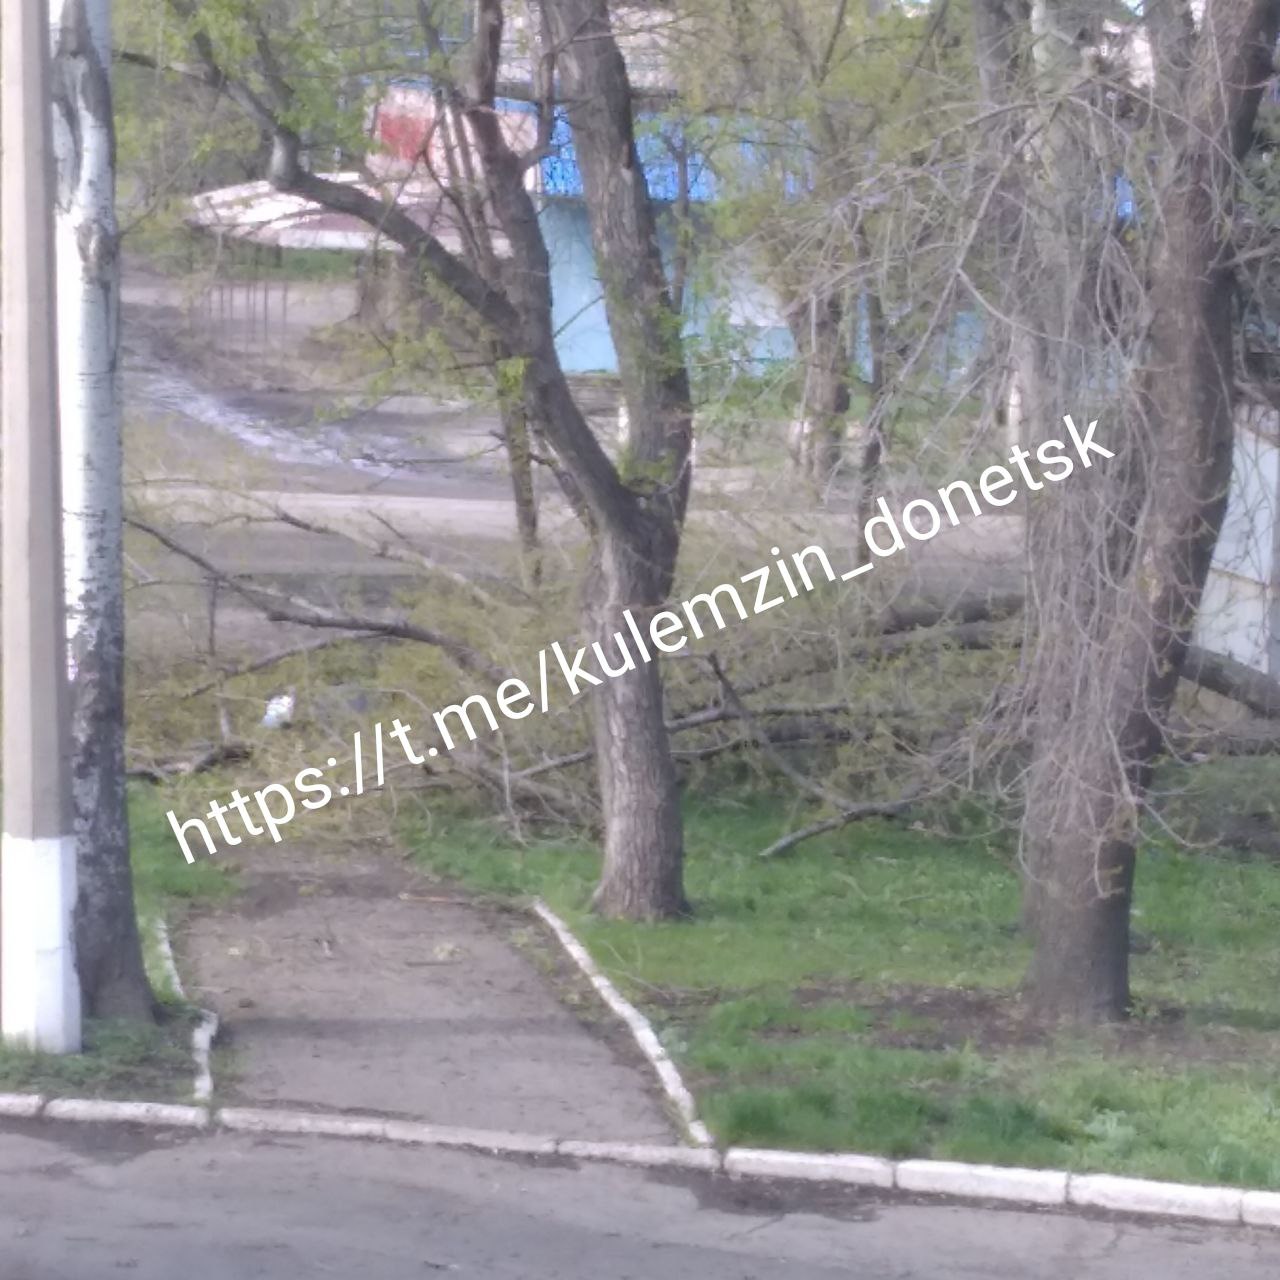 Про загибель та поранення мешканців внаслідок обстрілу повідомили у Донецьку, фото-6